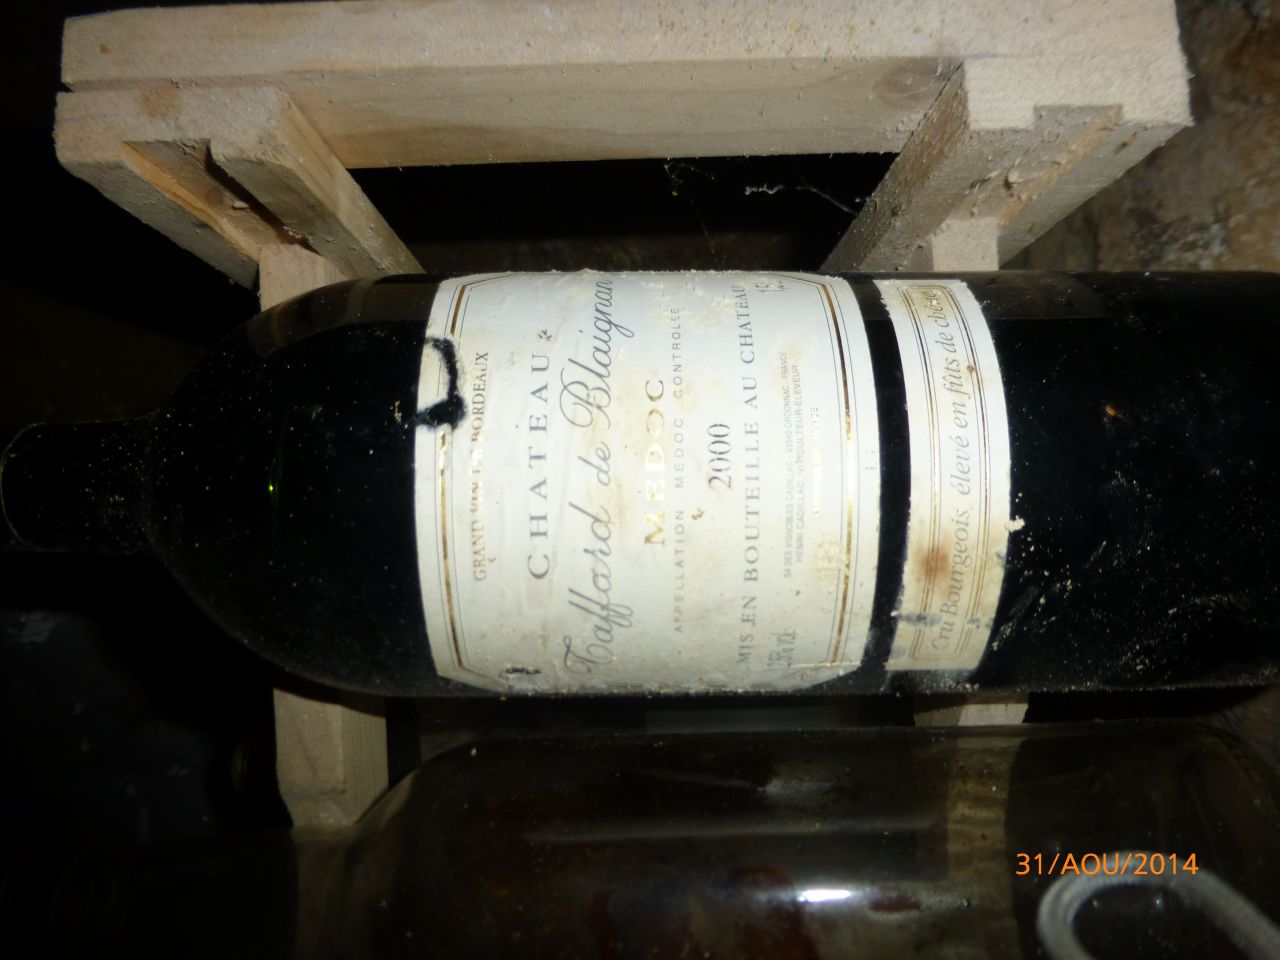 dcouverte dans la cave sous d'autres bouteilles vide. un magnum de vin rouge (valeur entre 30 et 90?)